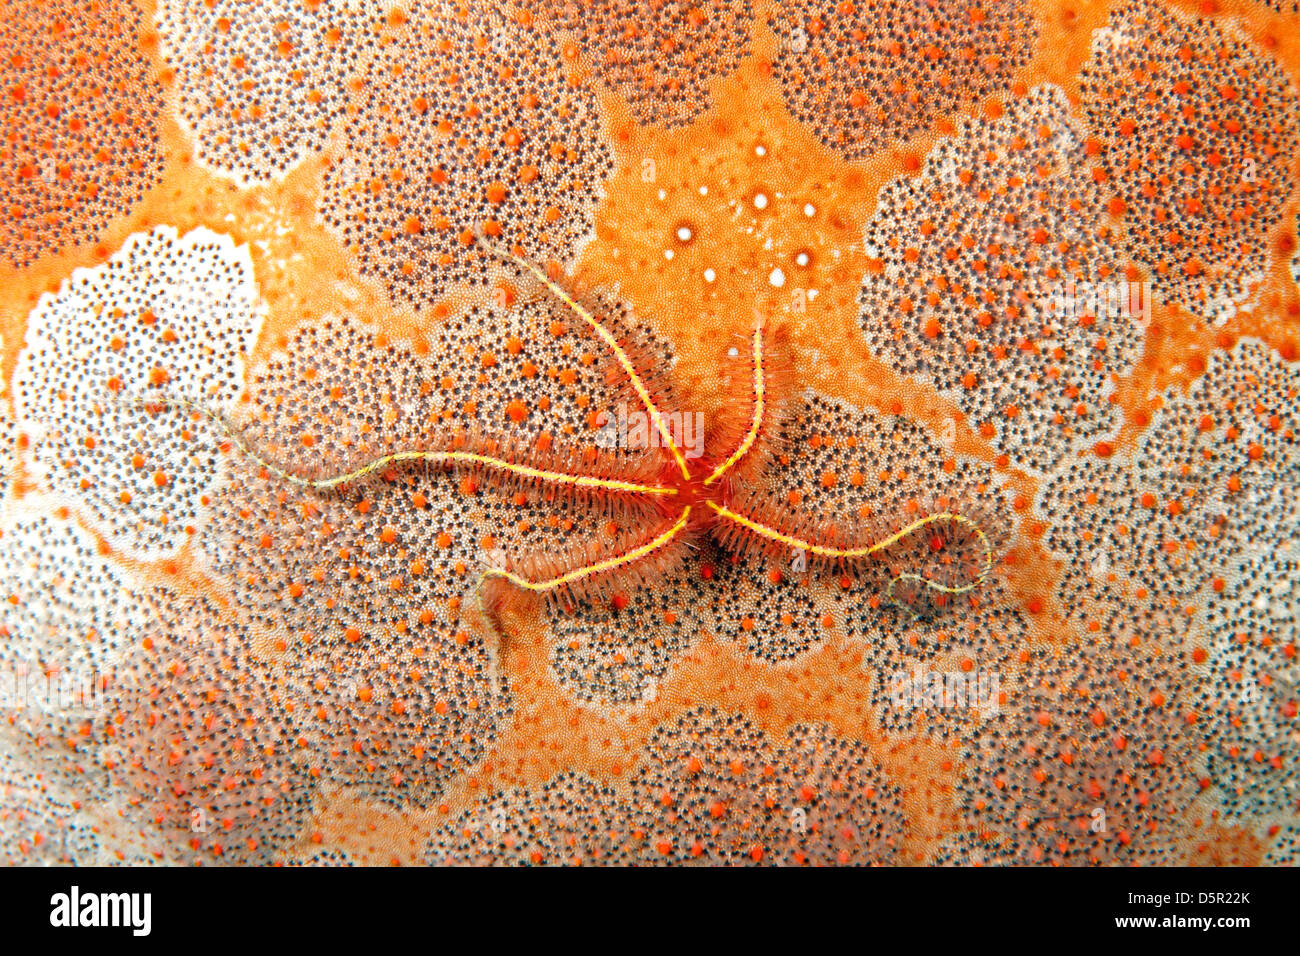 Spröde Star, wahrscheinlich Ophiothrix sp, auf der dorsalen Oberfläche einer nadelkissen Sea Star, Culcita novaeguineae. Stockfoto